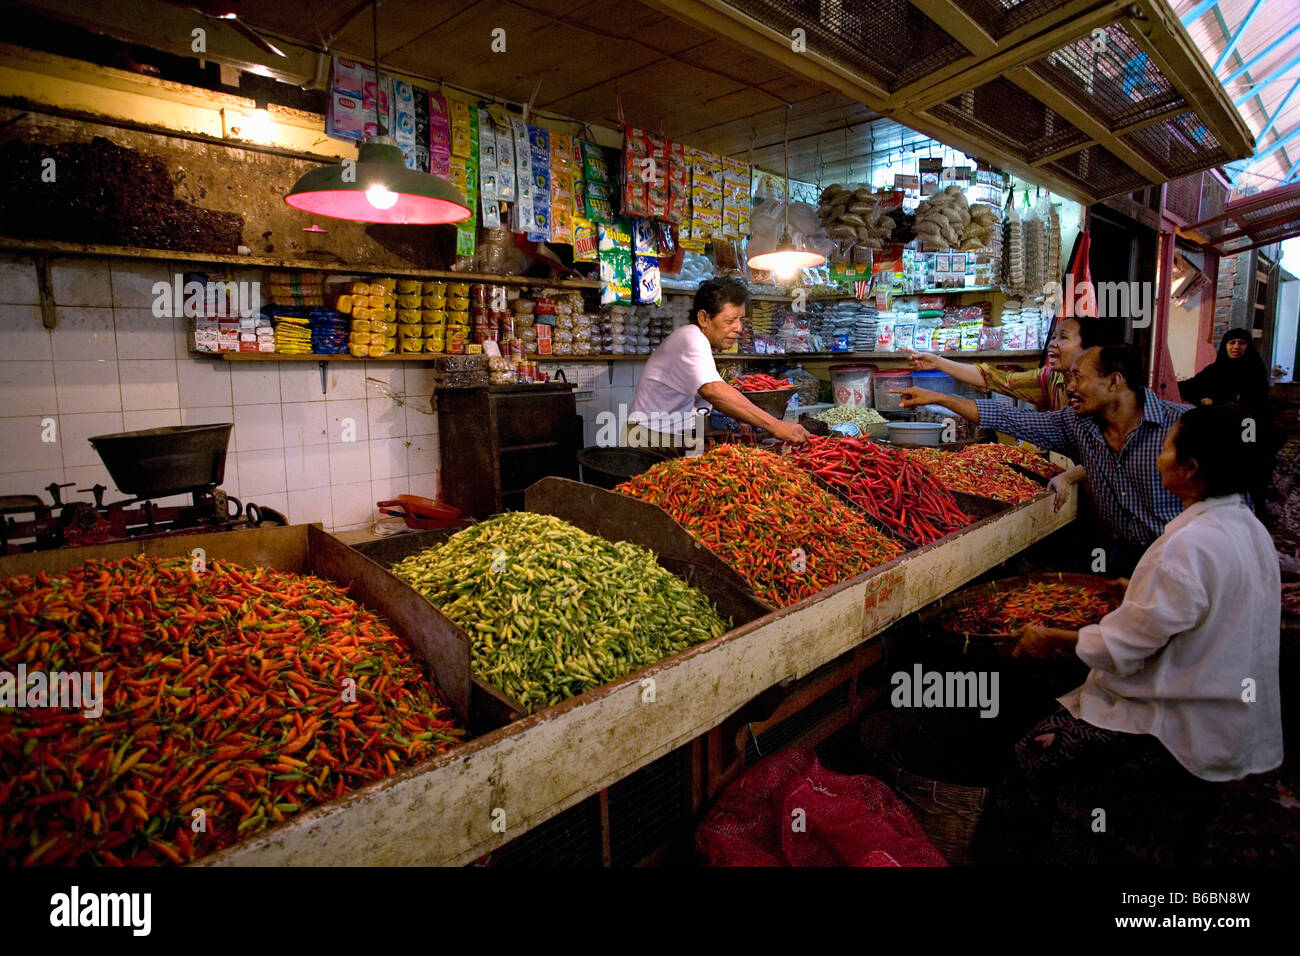 Indonesia, Surabaya, Java, Pasar Pabean market Stock Photo